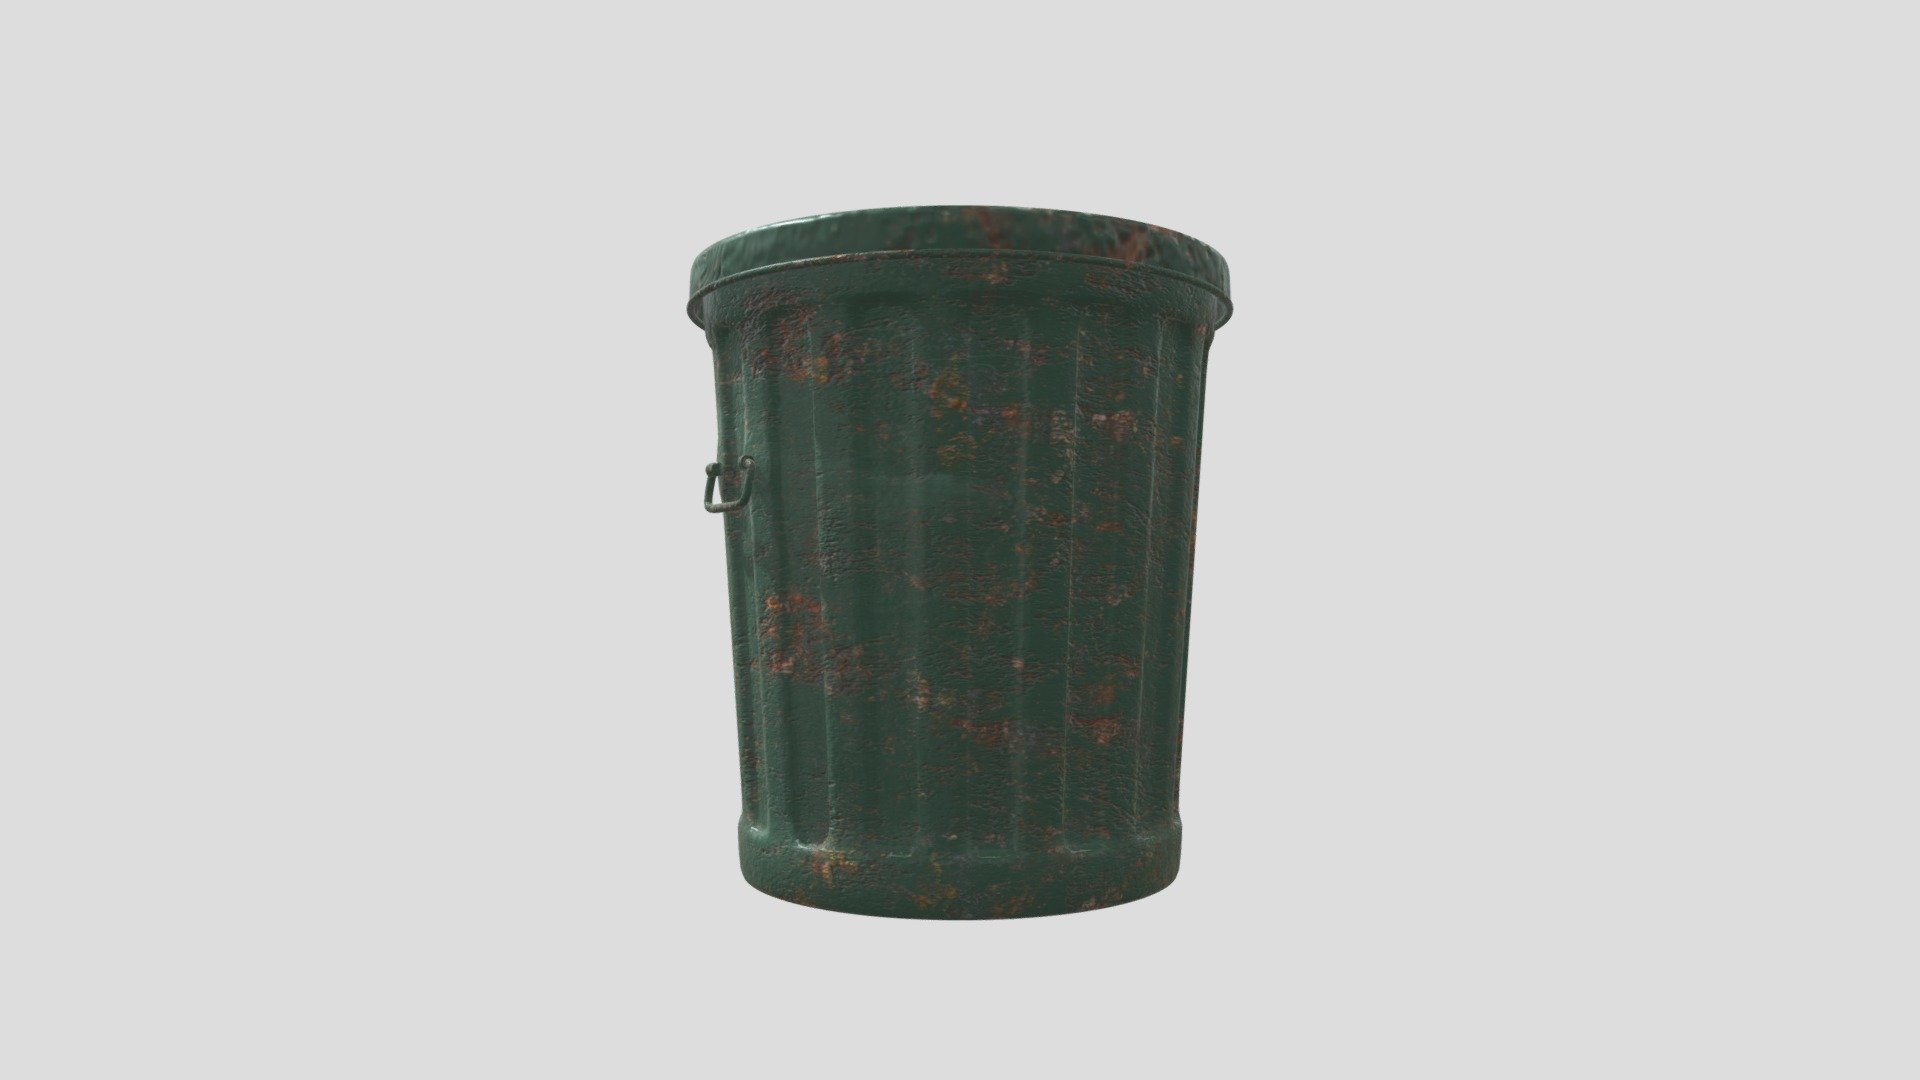 Rusty trash can